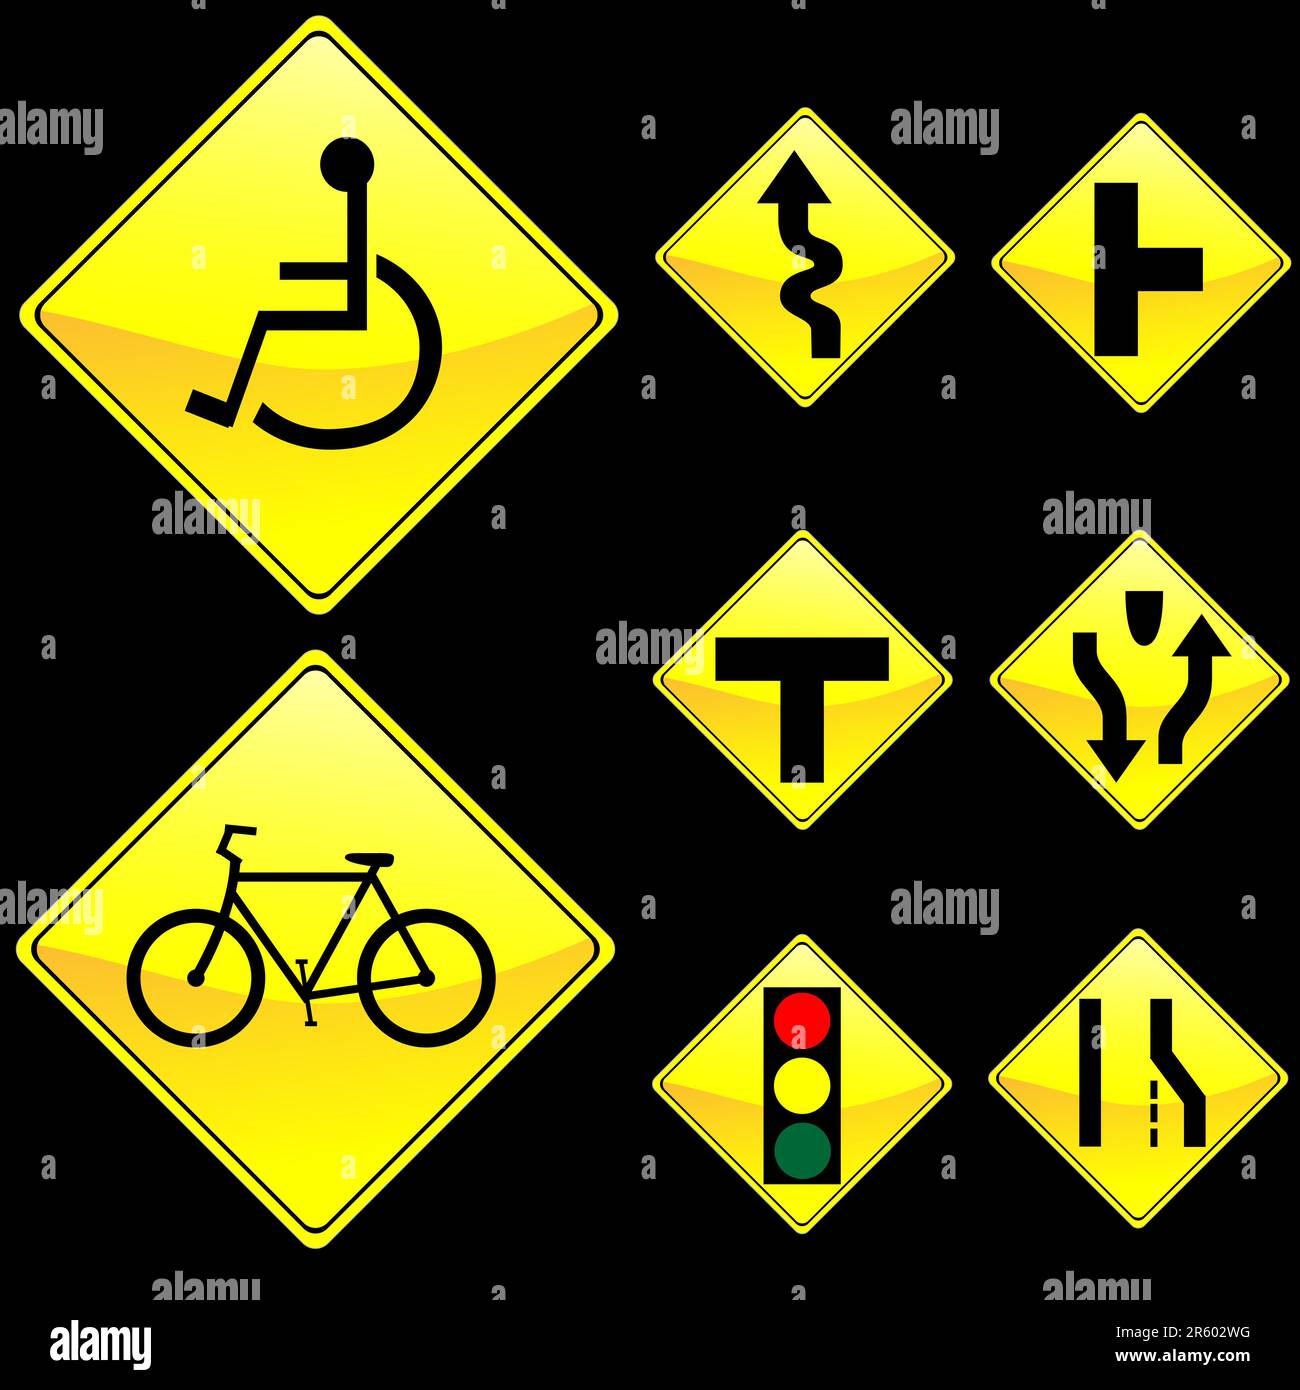 Illustrazione vettoriale di otto cartelli stradali gialli a forma di diamante Set 3 Illustrazione Vettoriale